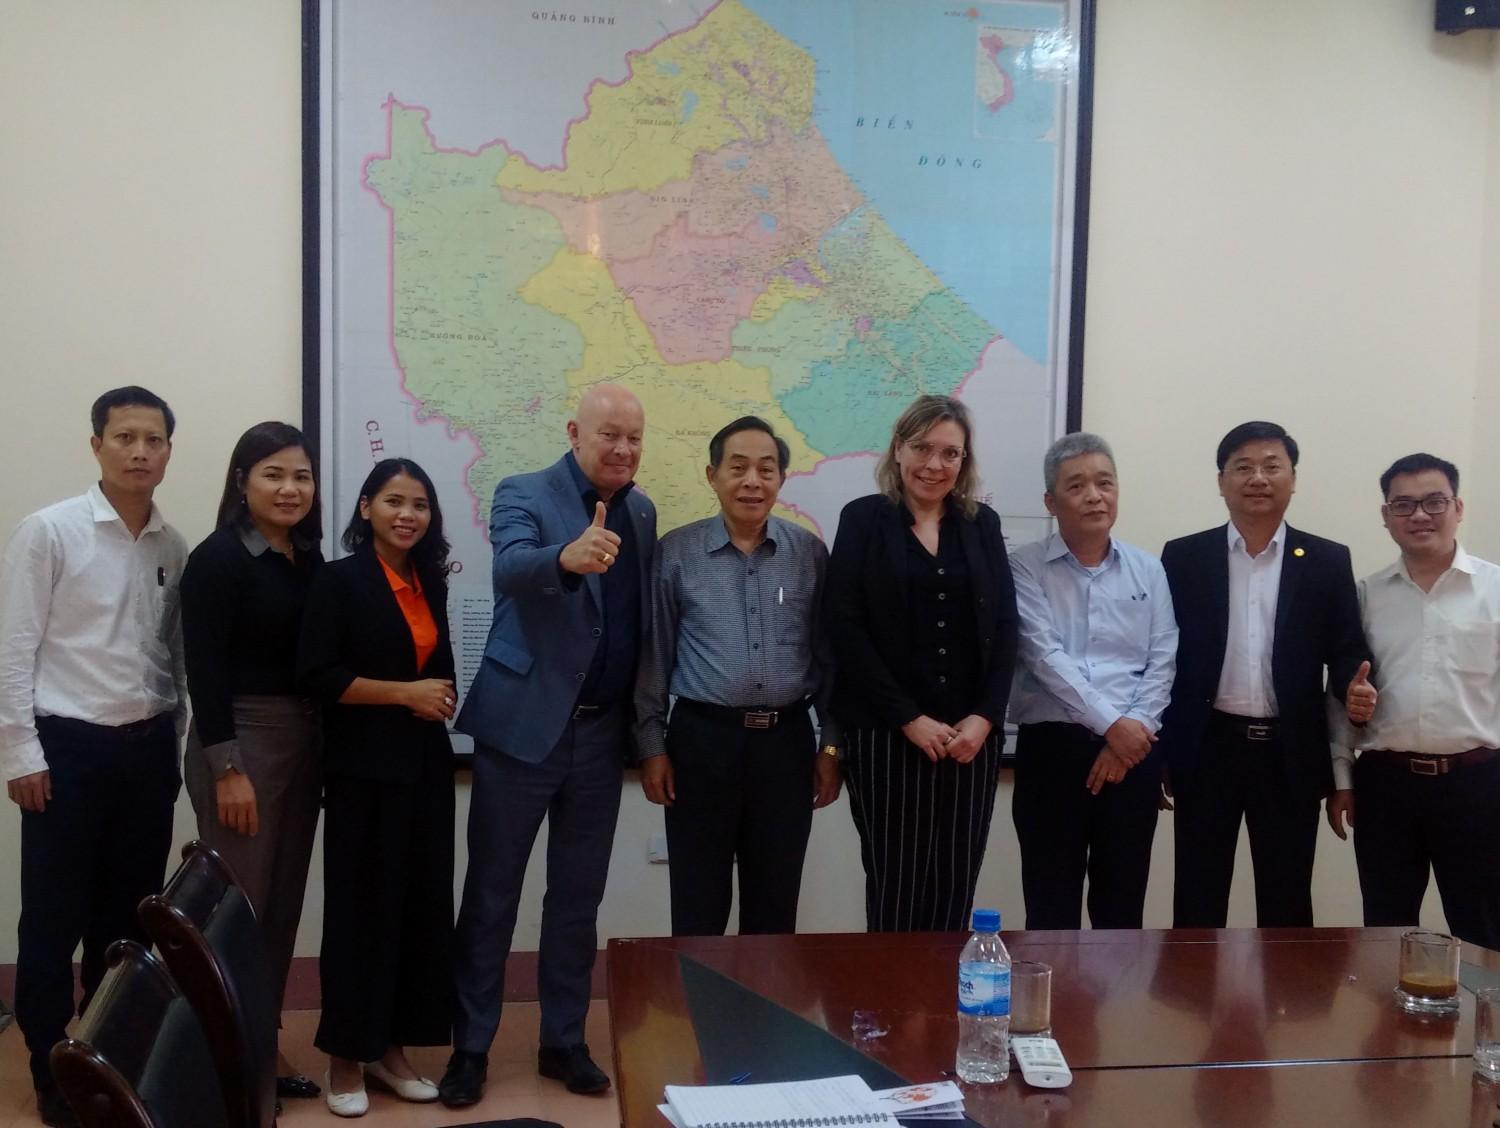 Đoàn tổ chức Programma Uitzending Managers (PUM)/Hà Lan làm việc tại tỉnh Quảng Trị